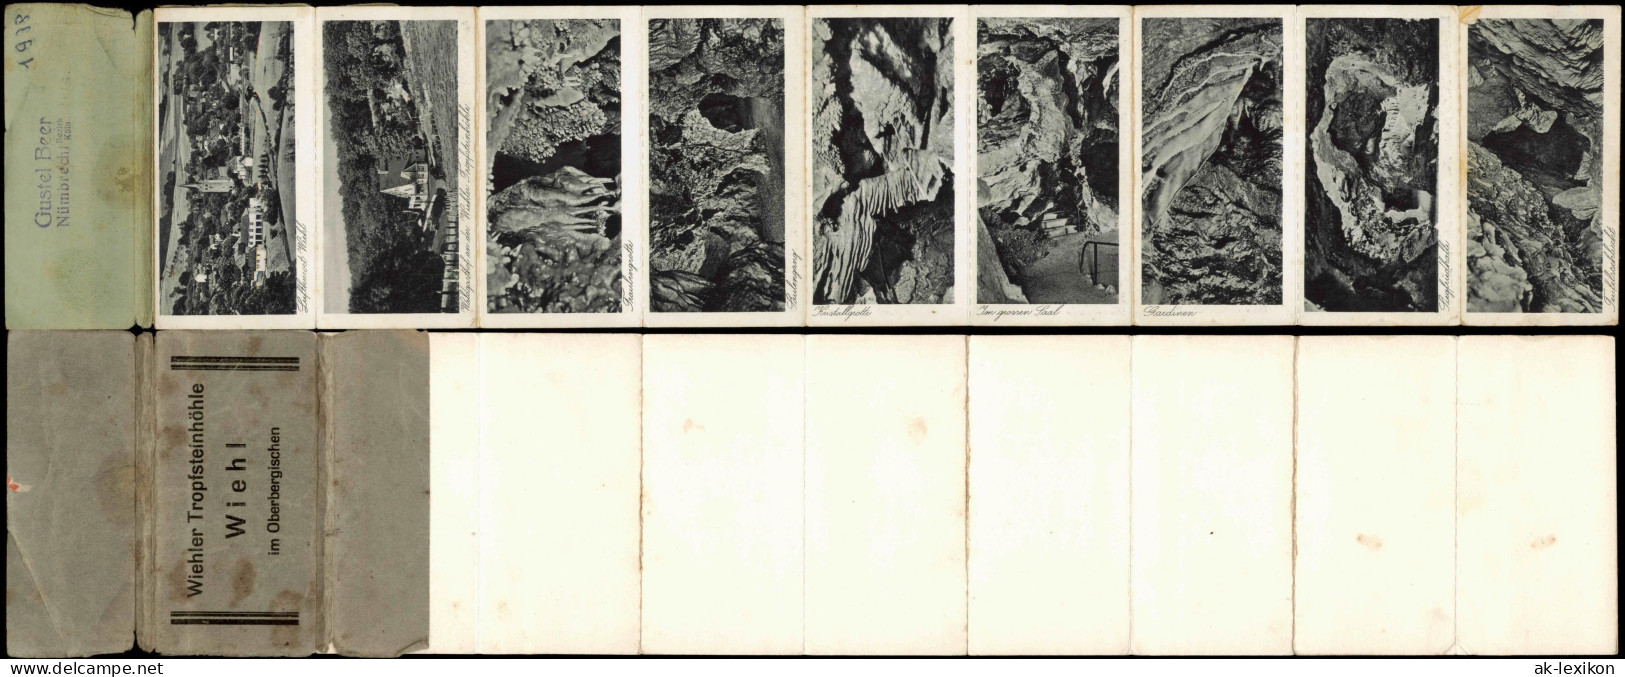 Wiehl Wiehler Tropfsteinhöhle Leporello Mit 9 Bildern 1938 Leporello - Wiehl